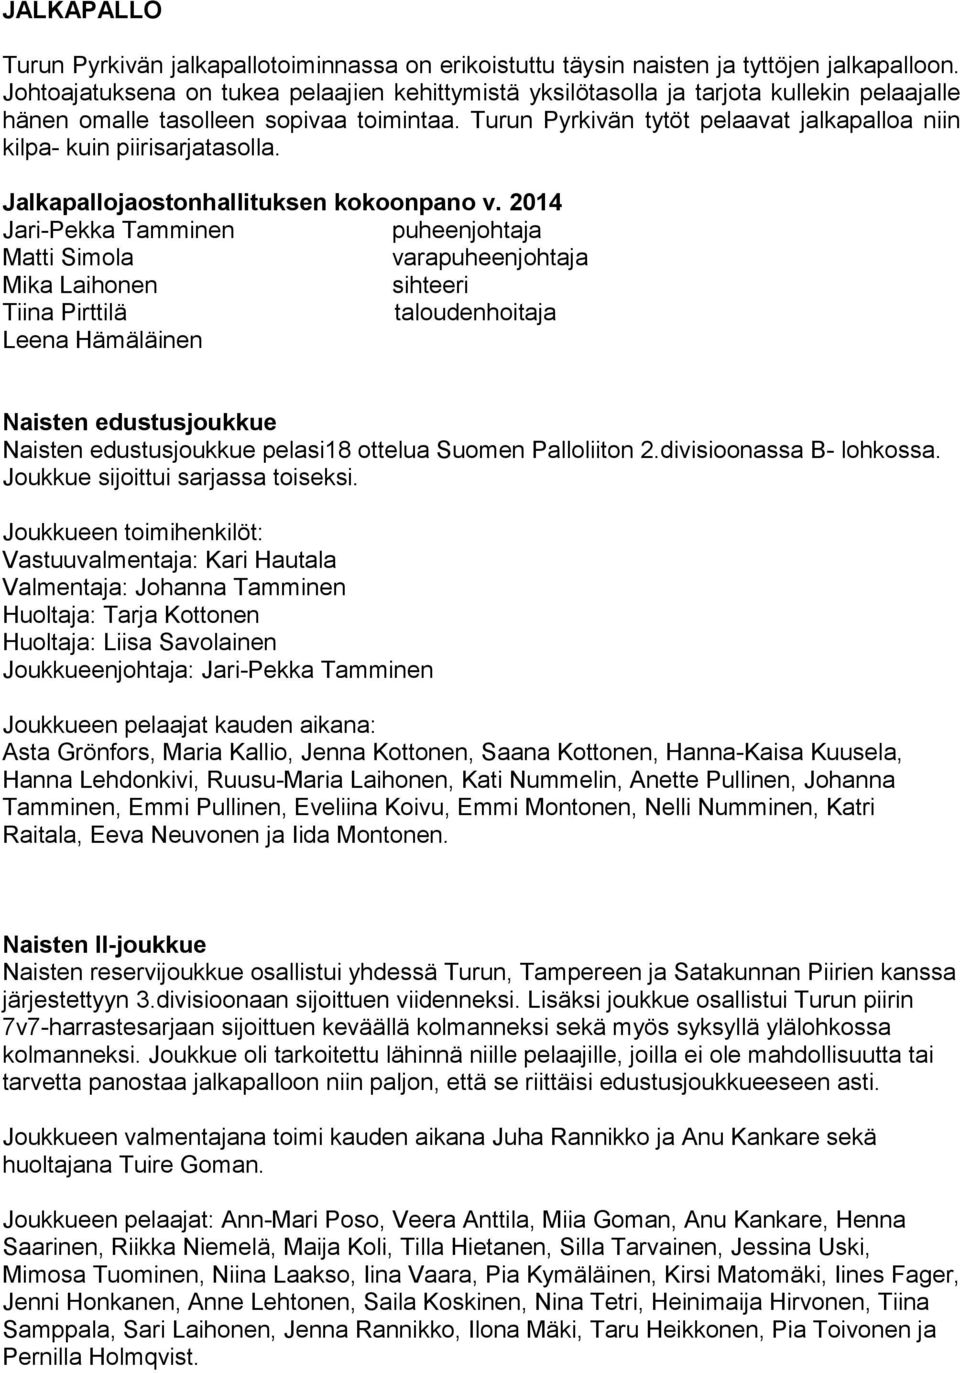 Turun Pyrkivän tytöt pelaavat jalkapalloa niin kilpa- kuin piirisarjatasolla. Jalkapallojaostonhallituksen kokoonpano v.